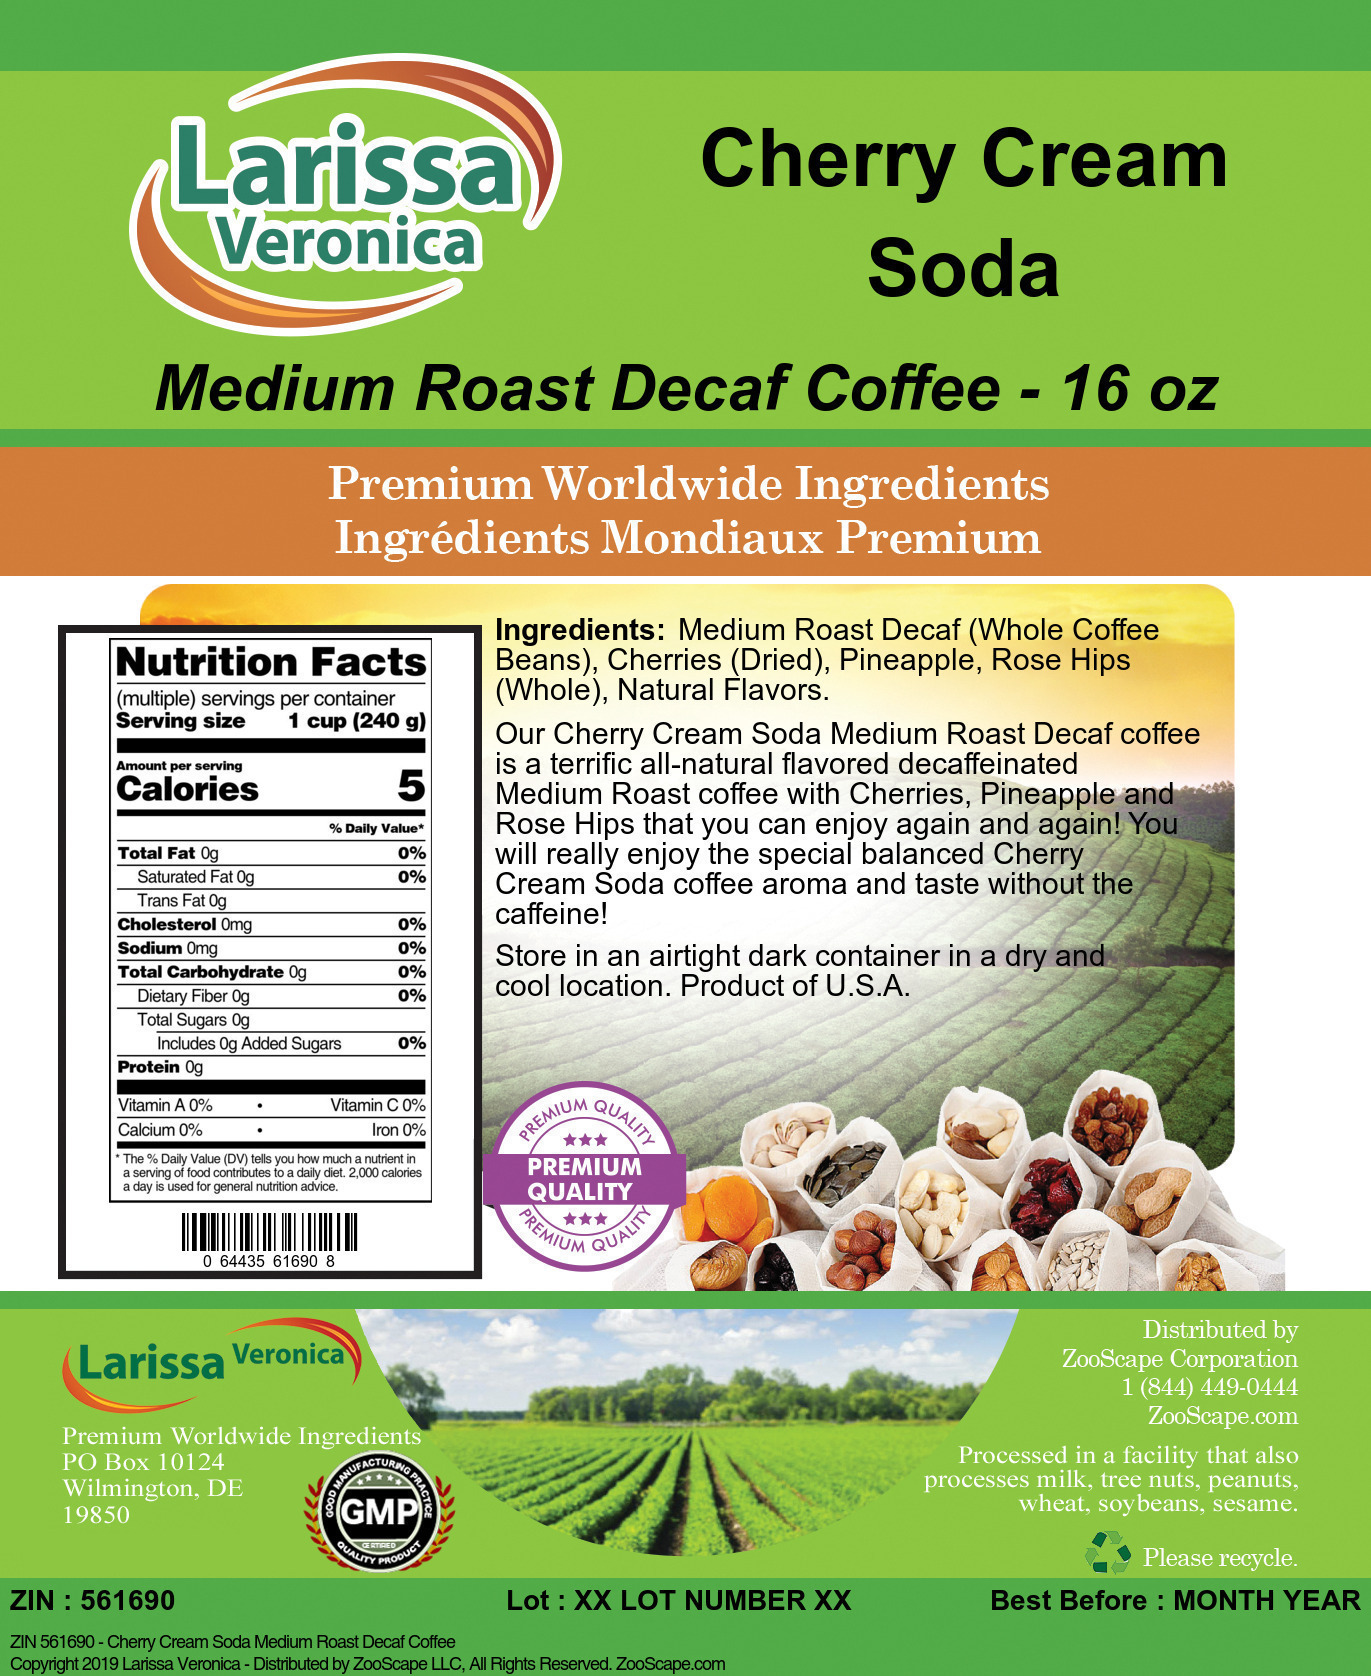 Cherry Cream Soda Medium Roast Decaf Coffee - Label